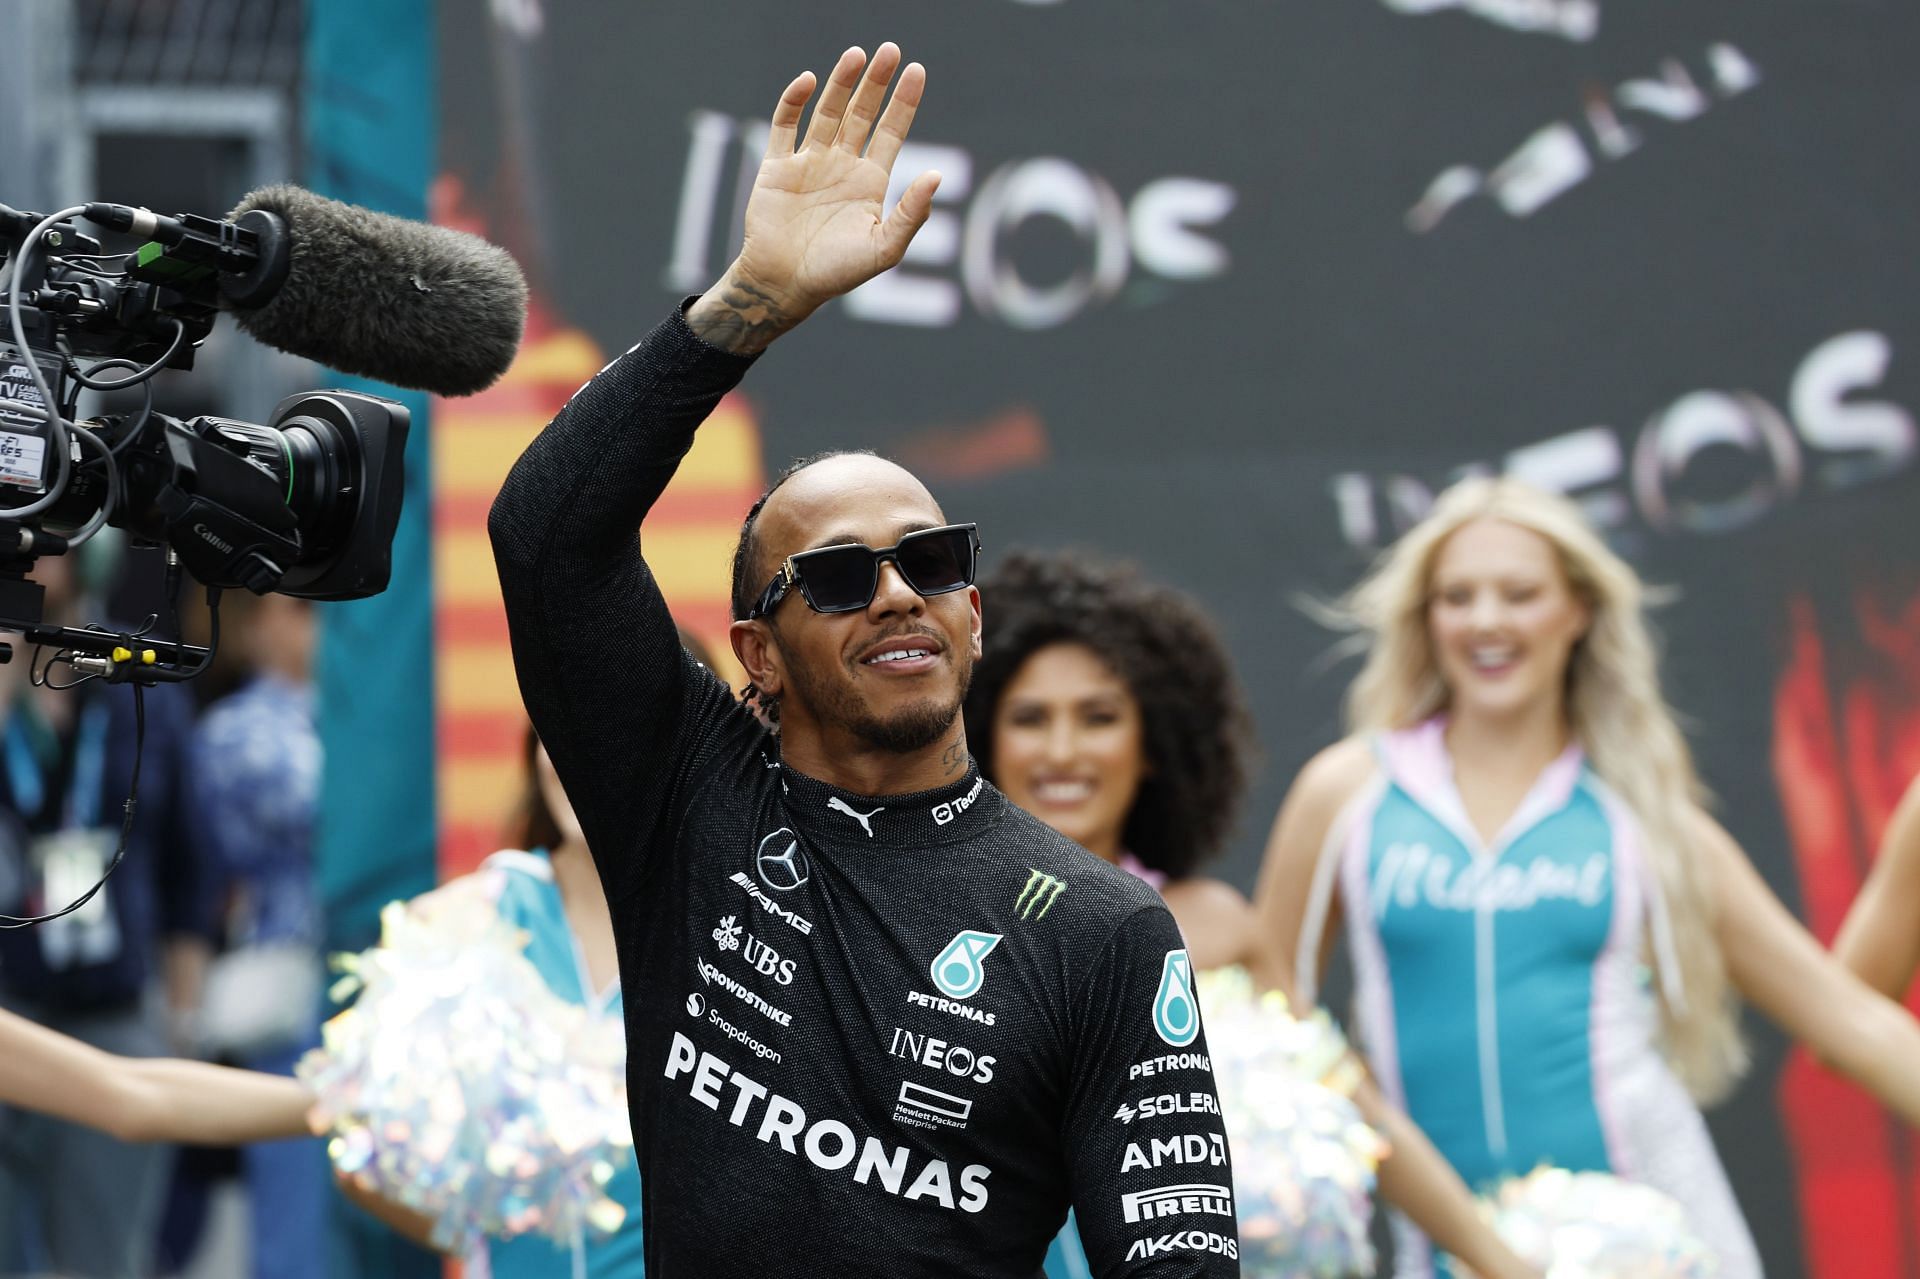 Lewis Hamilton at the F1 Grand Prix of Miami